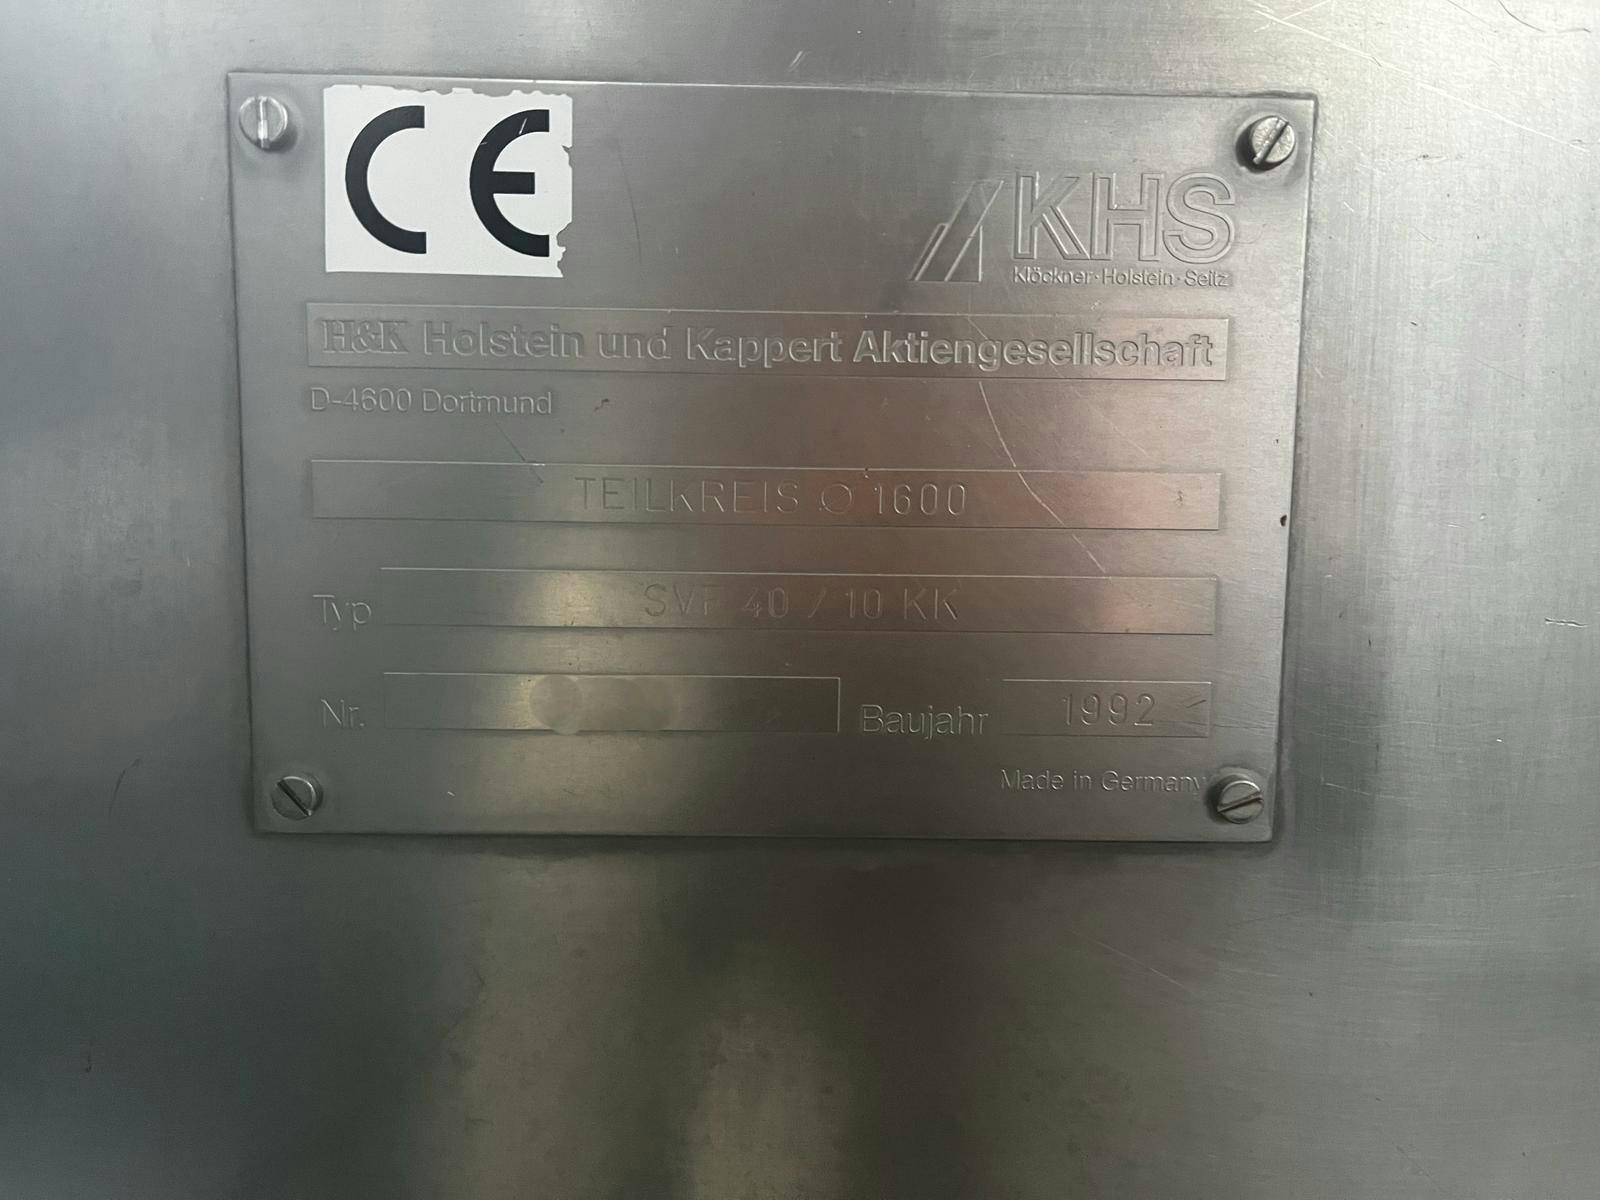 Výrobní štítek H &amp; K SVF 40/10 KK